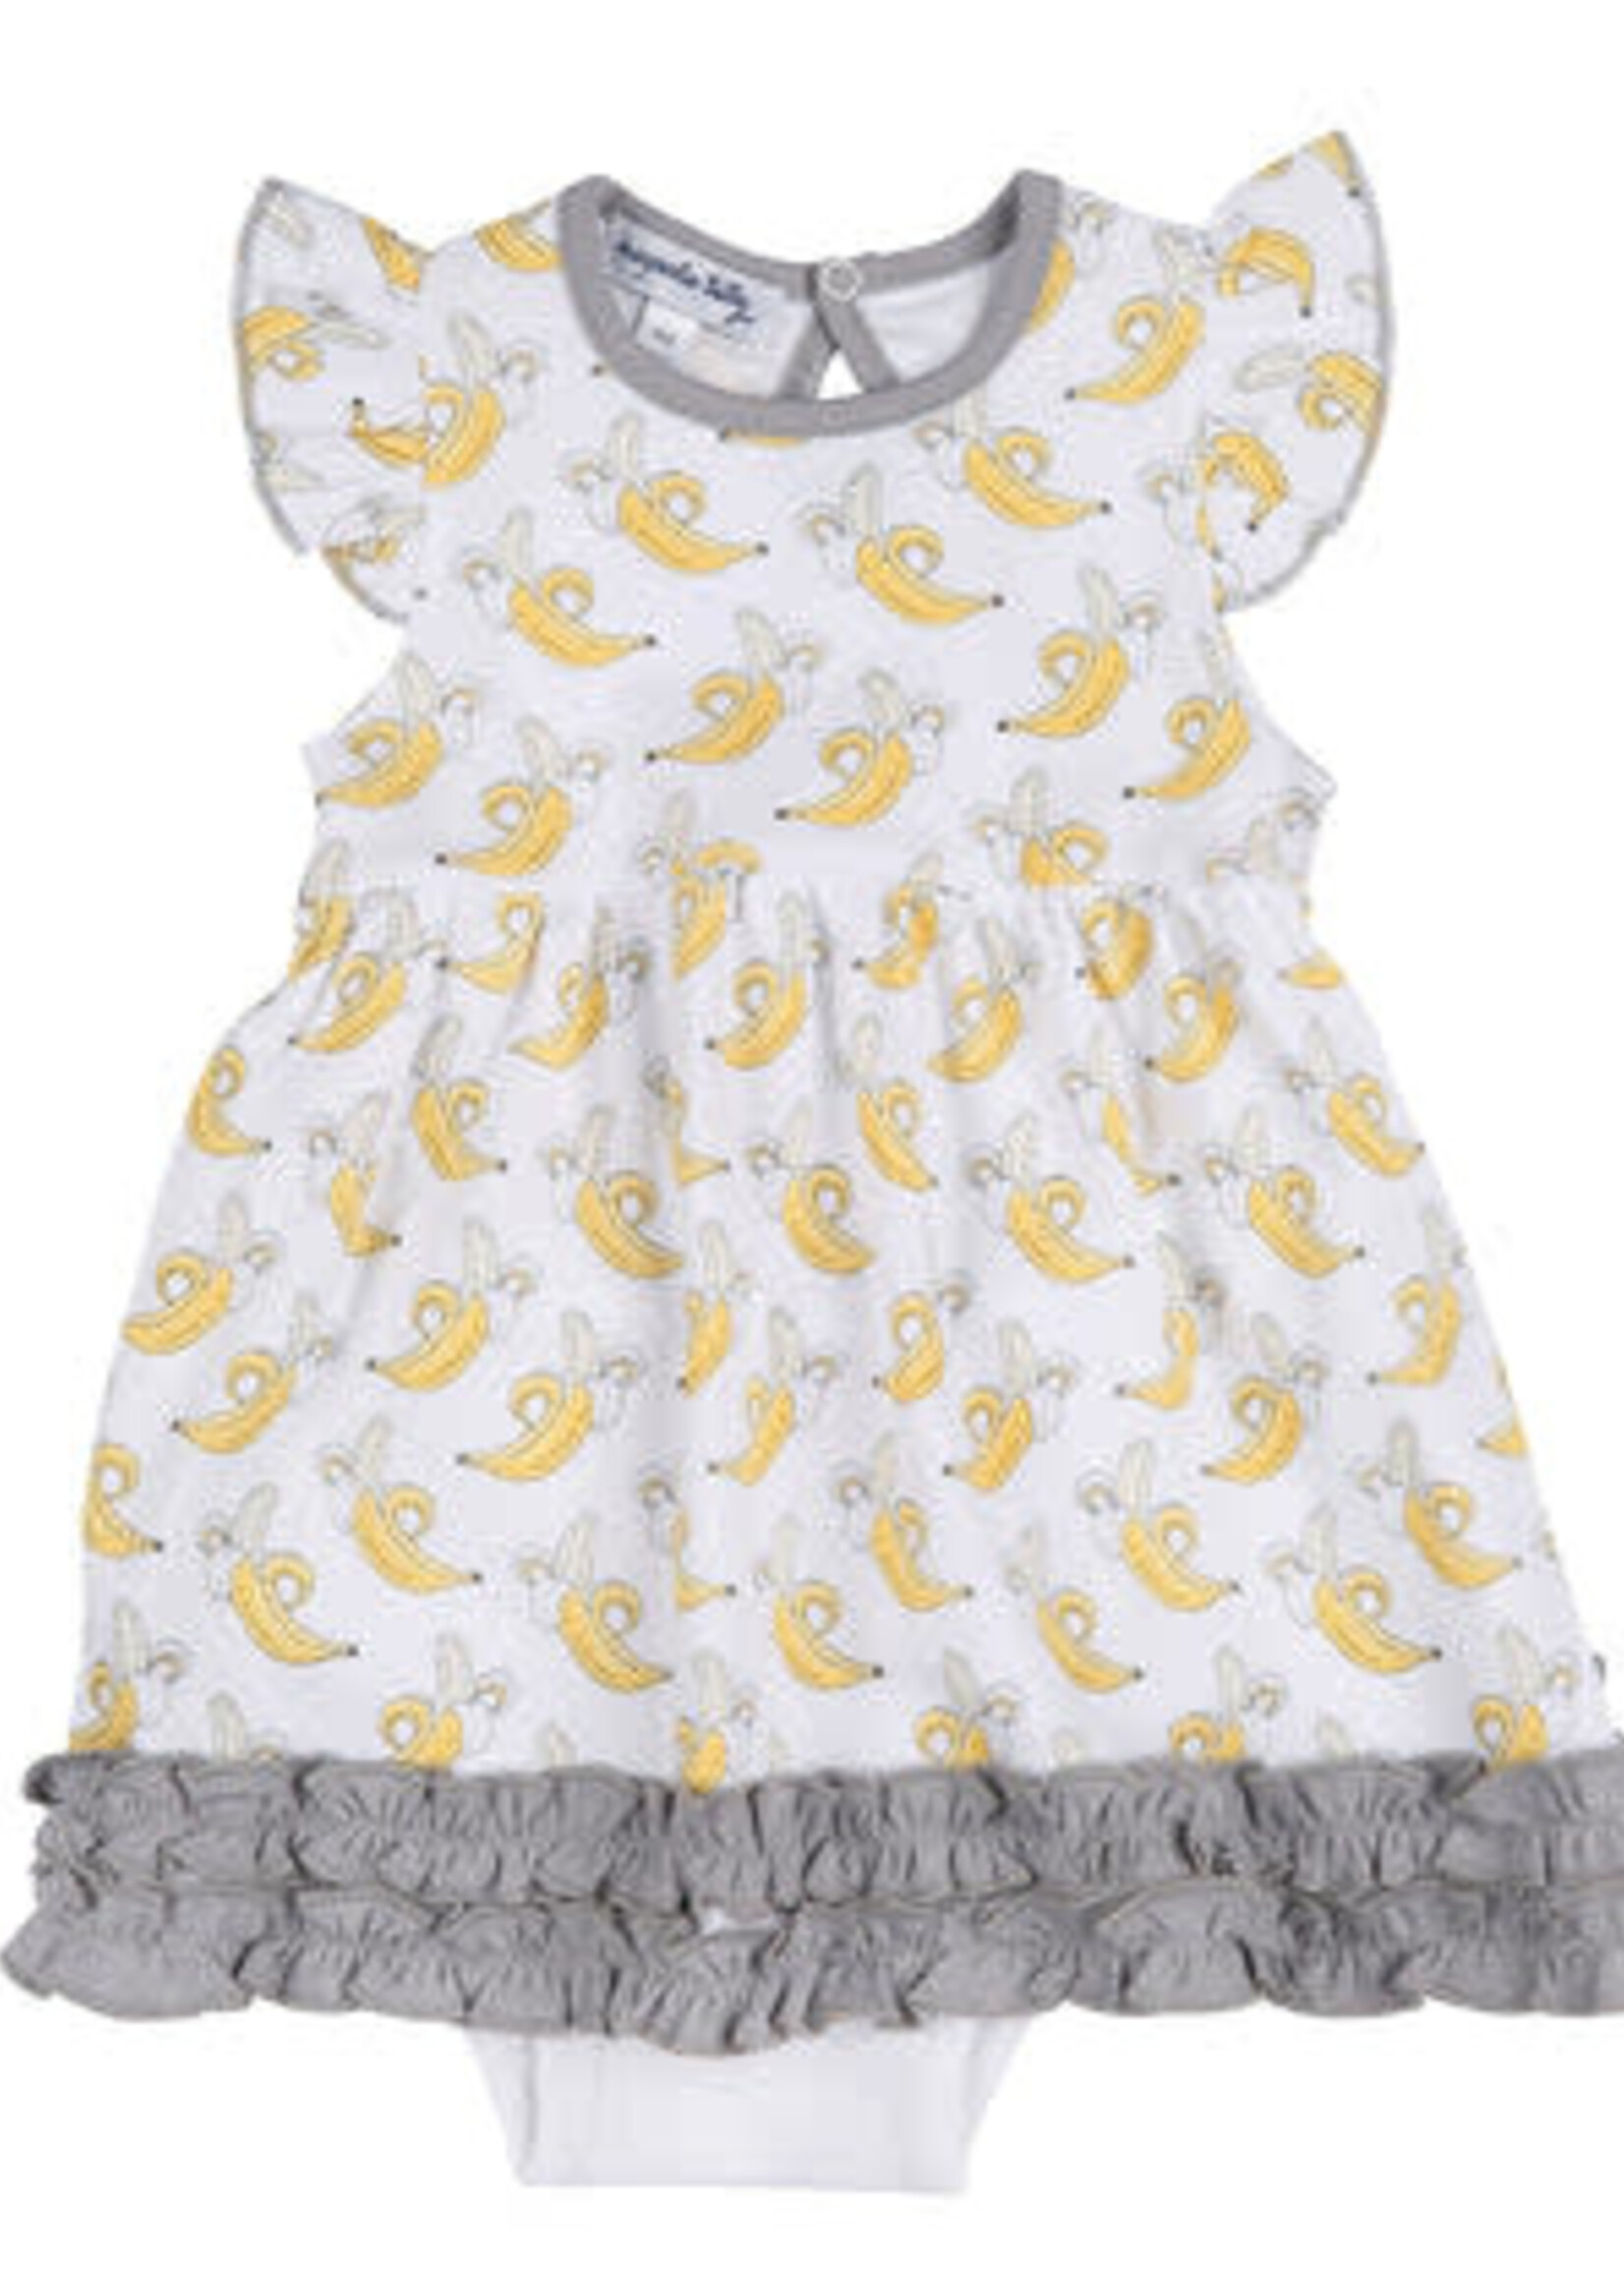 Magnolia Baby Bananas Printed Flutter Dress Set